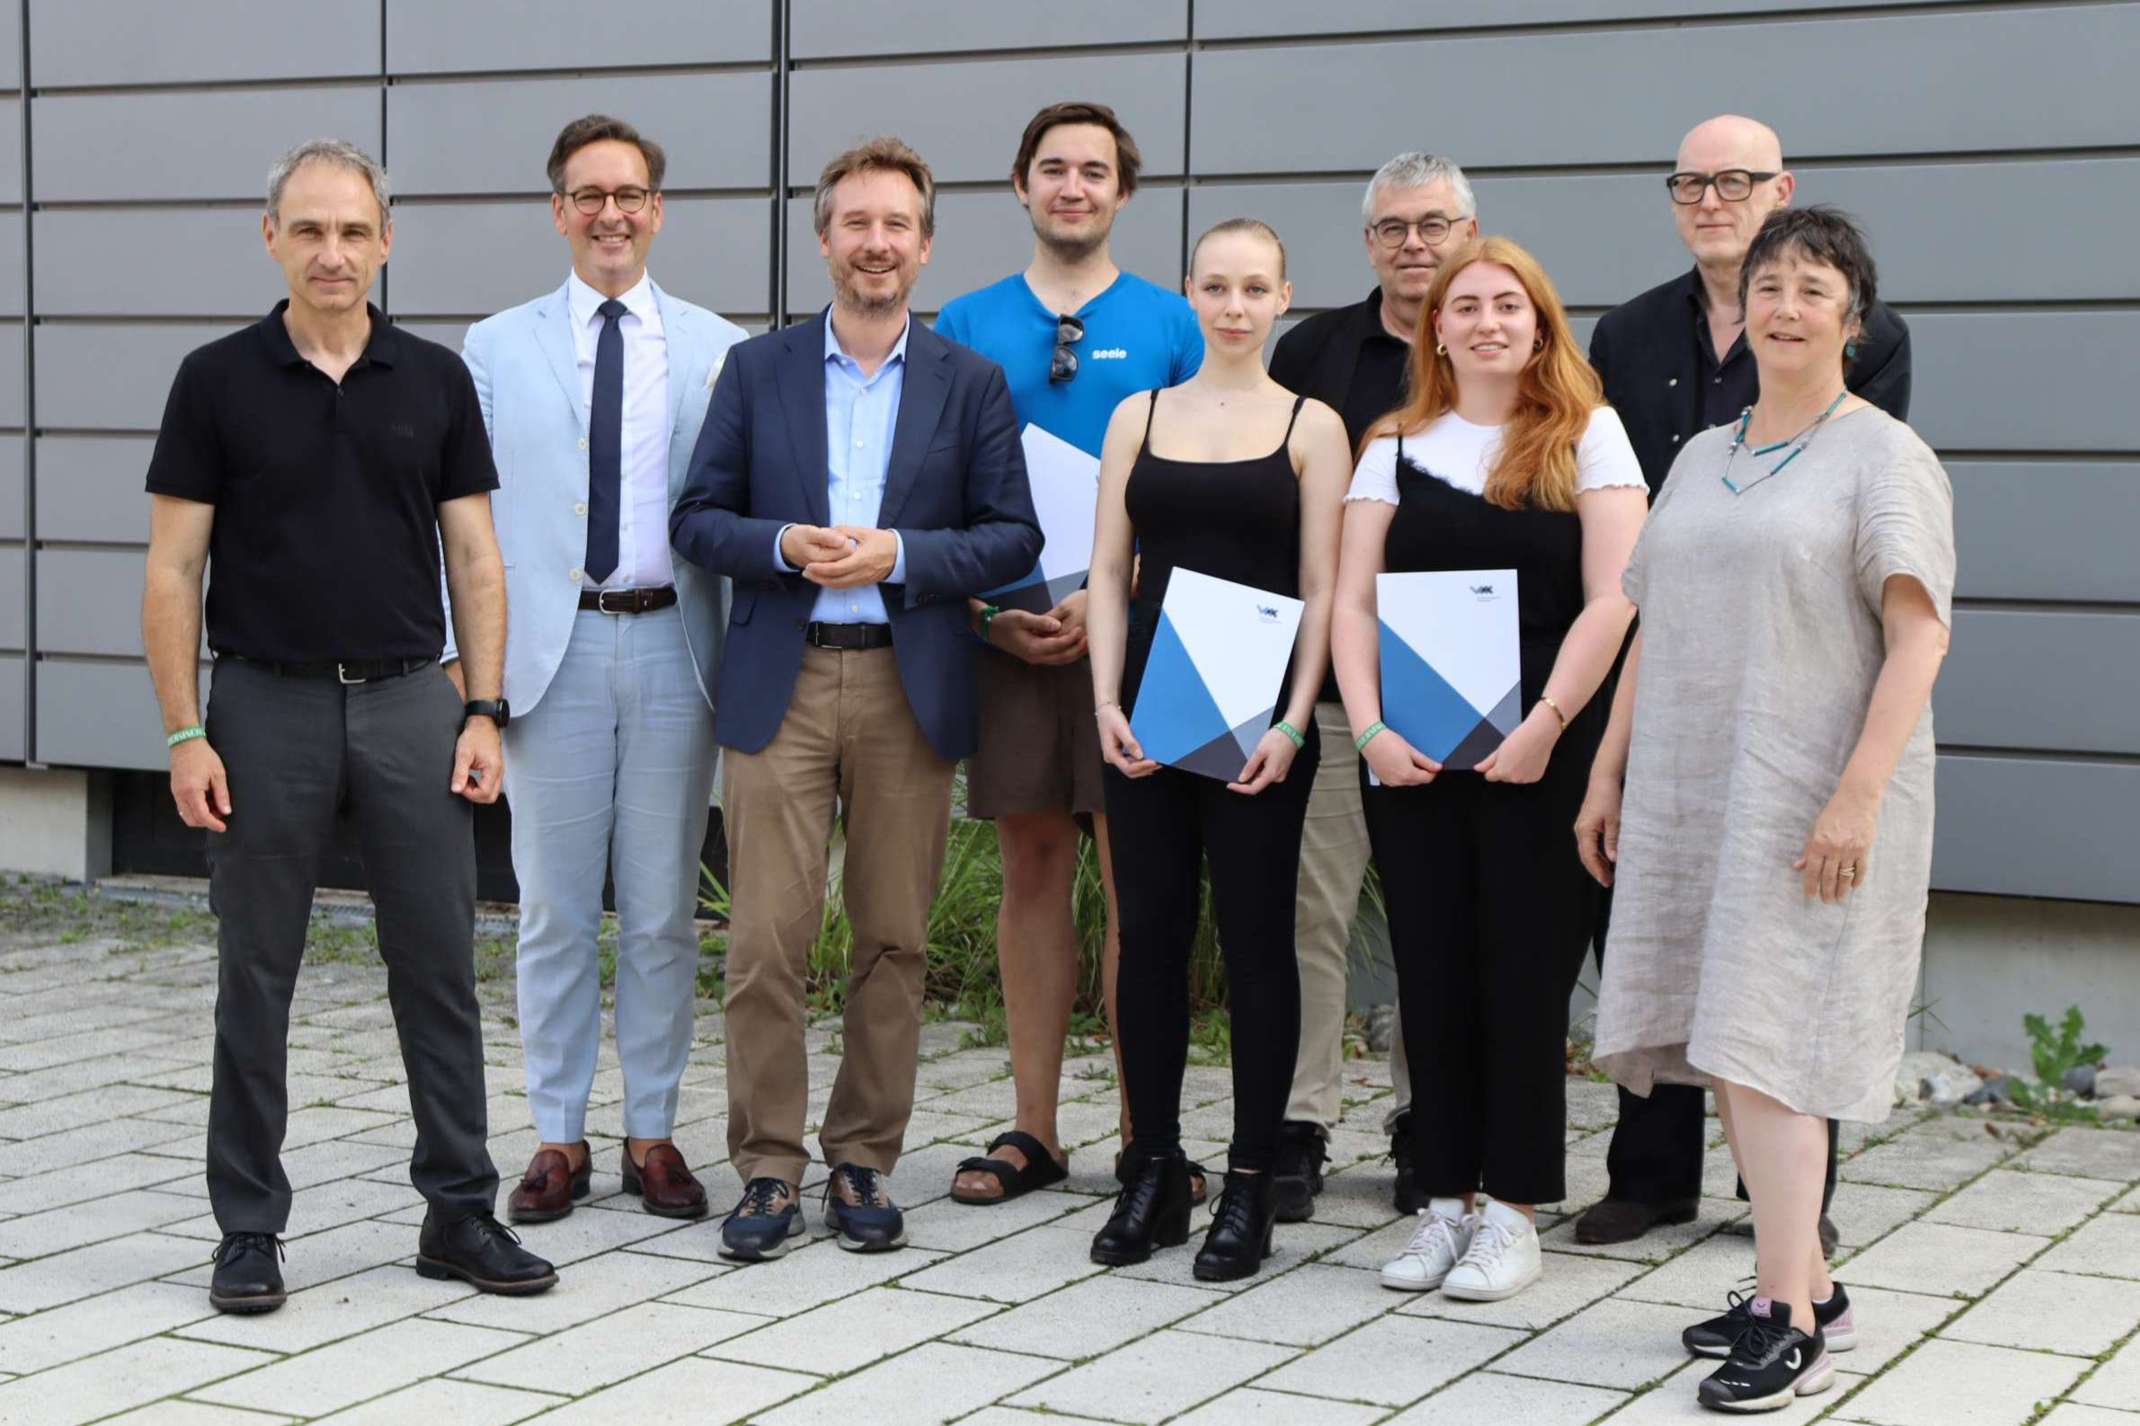 Gruppenfoto mit den ausgezeichneten Studierenden und der Jury